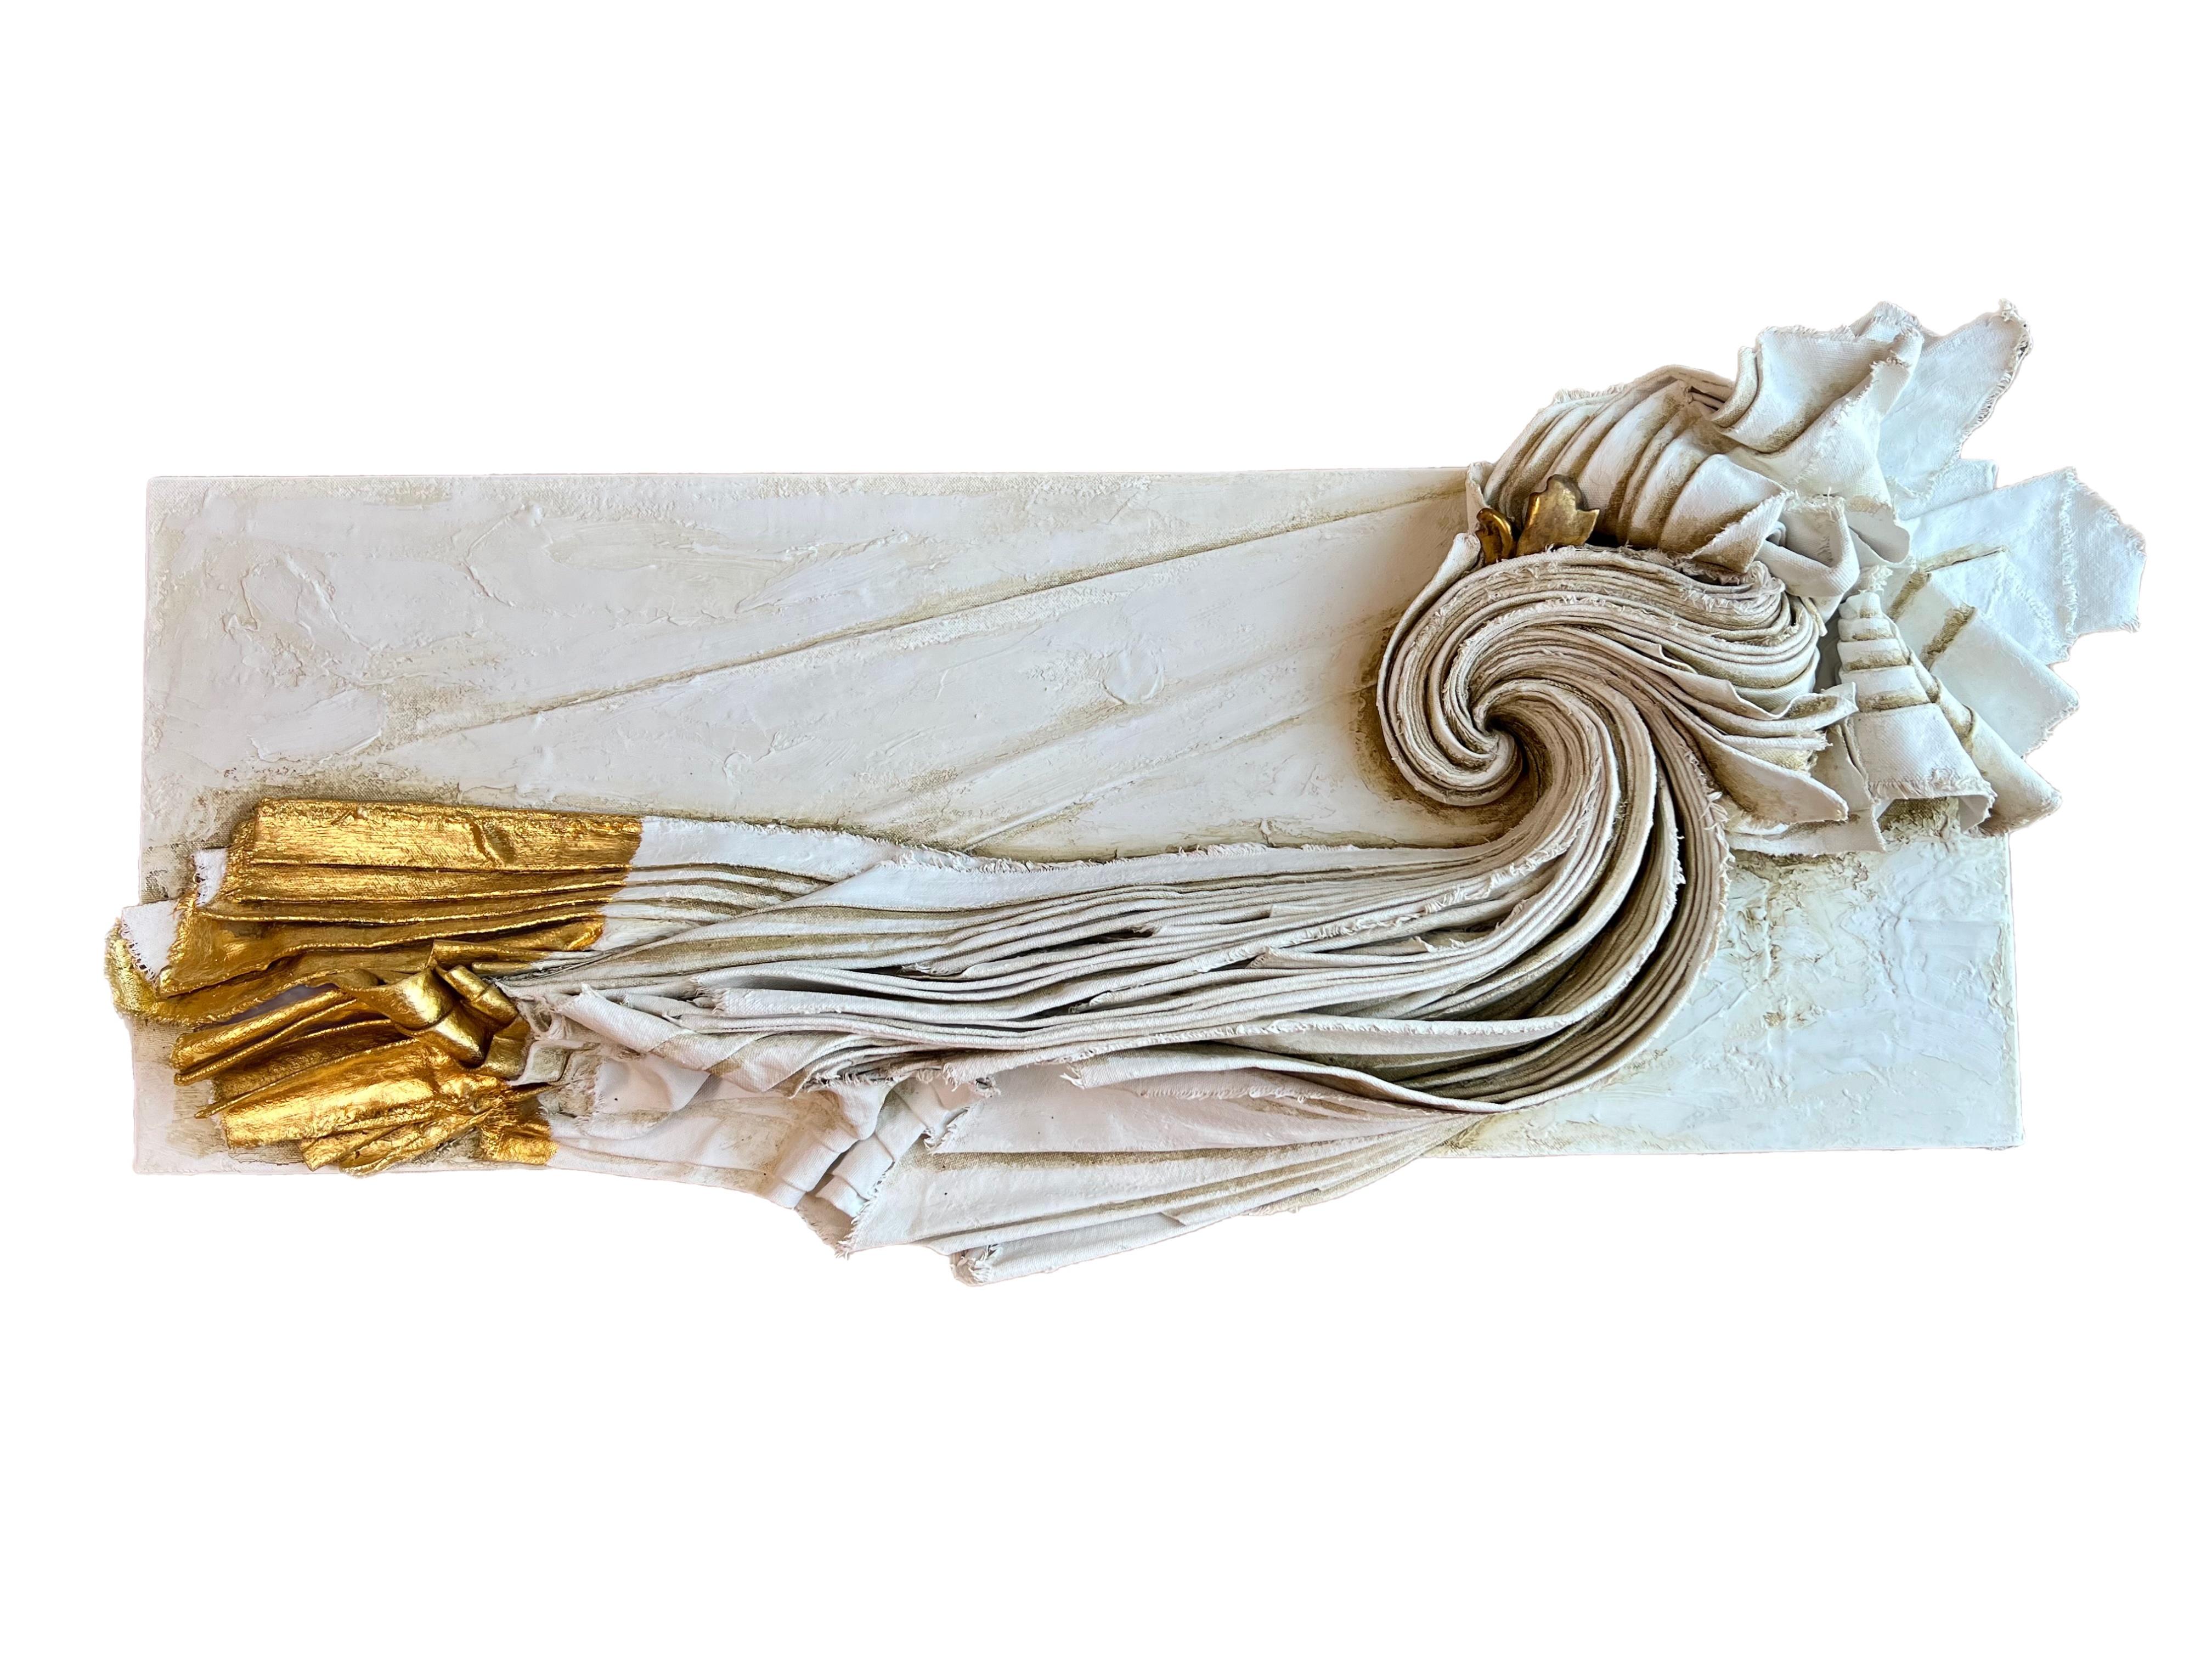 Toile sculpturale avec un fragment de bois doré italien du XVIIe siècle et feuille d'or 24k.

La toile sculptée est moulée avec du gesso, de la cire à dorer, de la pâte à marbre, de la terre verte, de l'ocre foncé italien et de la cendre sur carton.